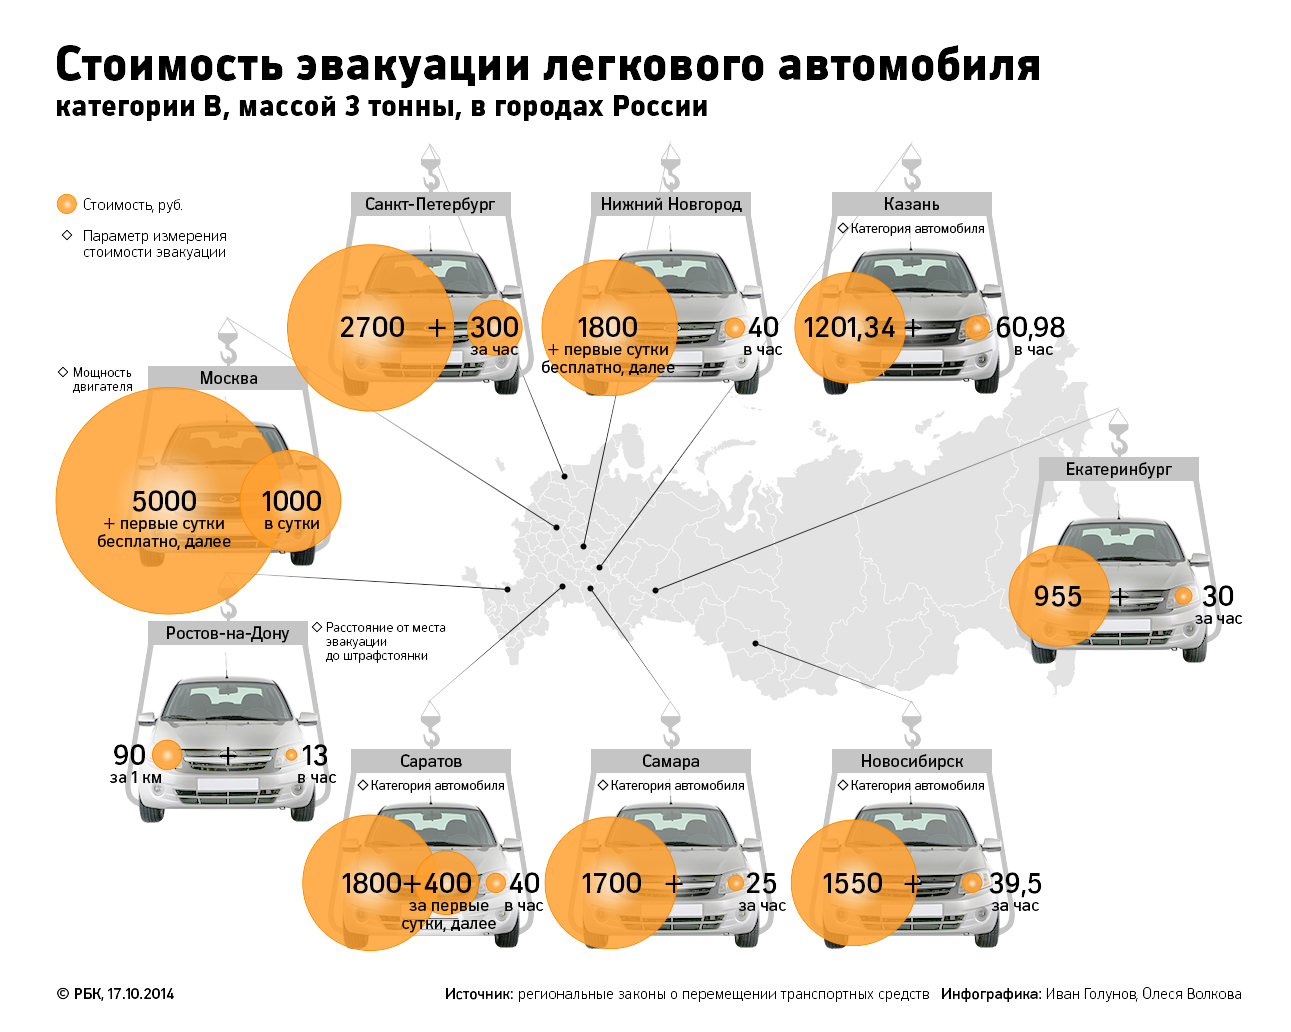 Генпрокуратура наказала чиновников за работу с парковками в Москве